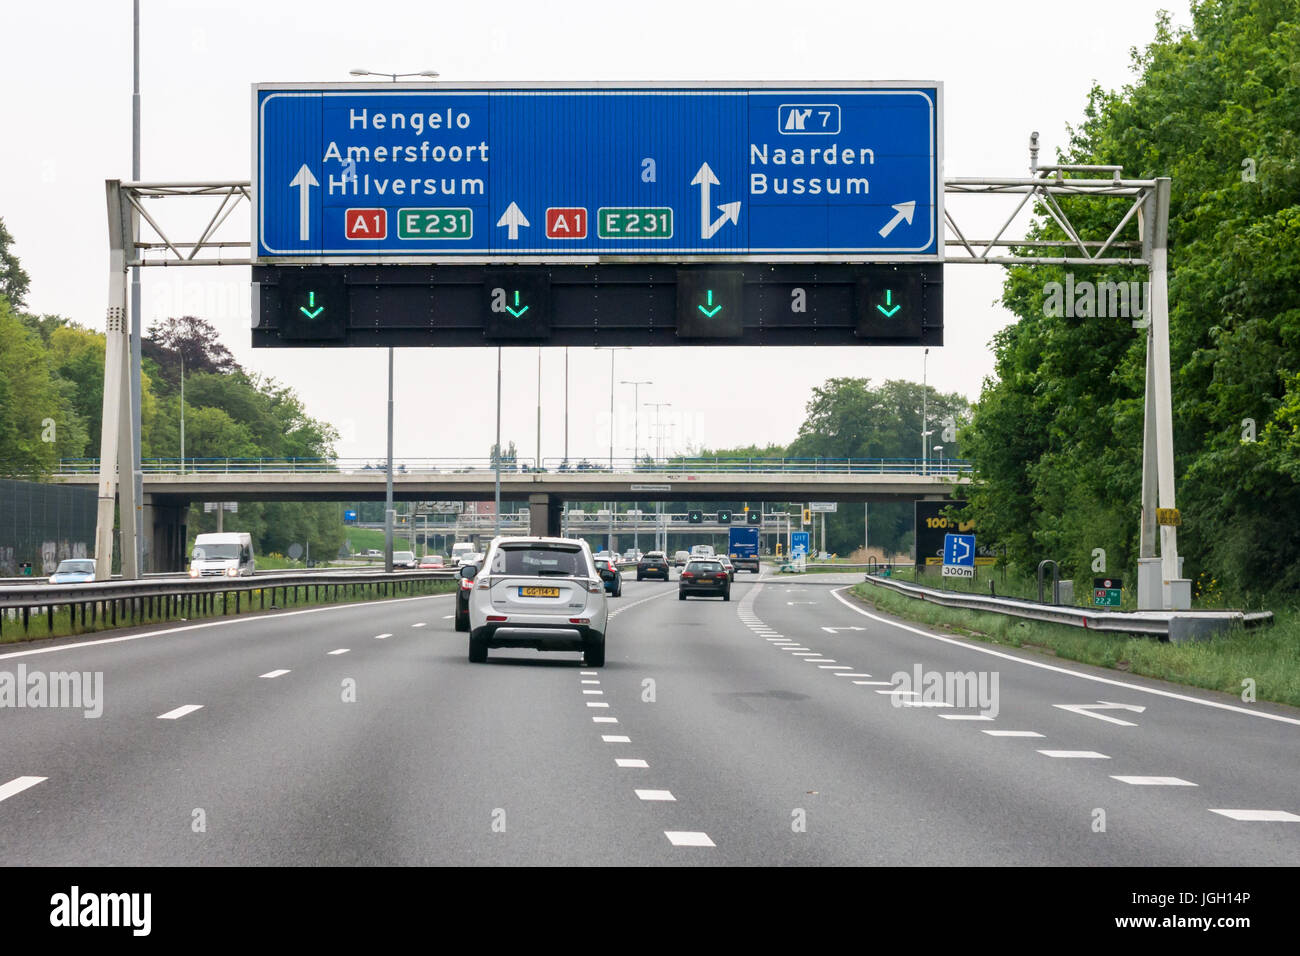 Le trafic sur l'autoroute A1 et route de frais généraux des panneaux d'information, Naarden, Hollande du Nord, Pays-Bas Banque D'Images